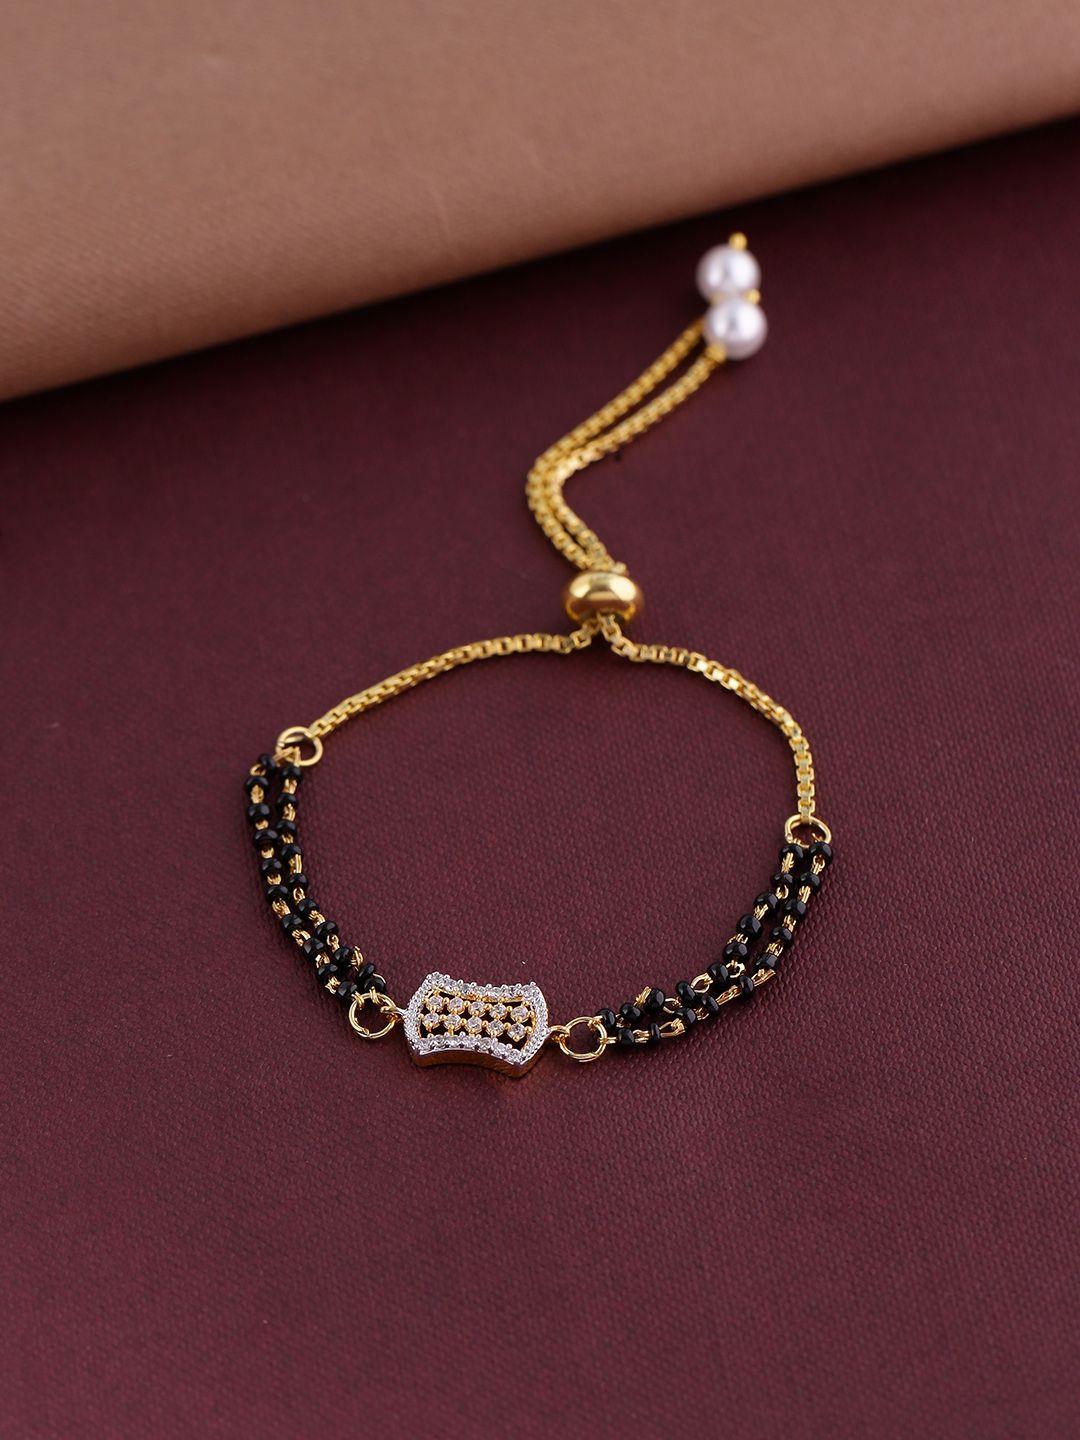 shoshaa black bracelet gold-plated handcrafted mangalsutra wraparound bracelet